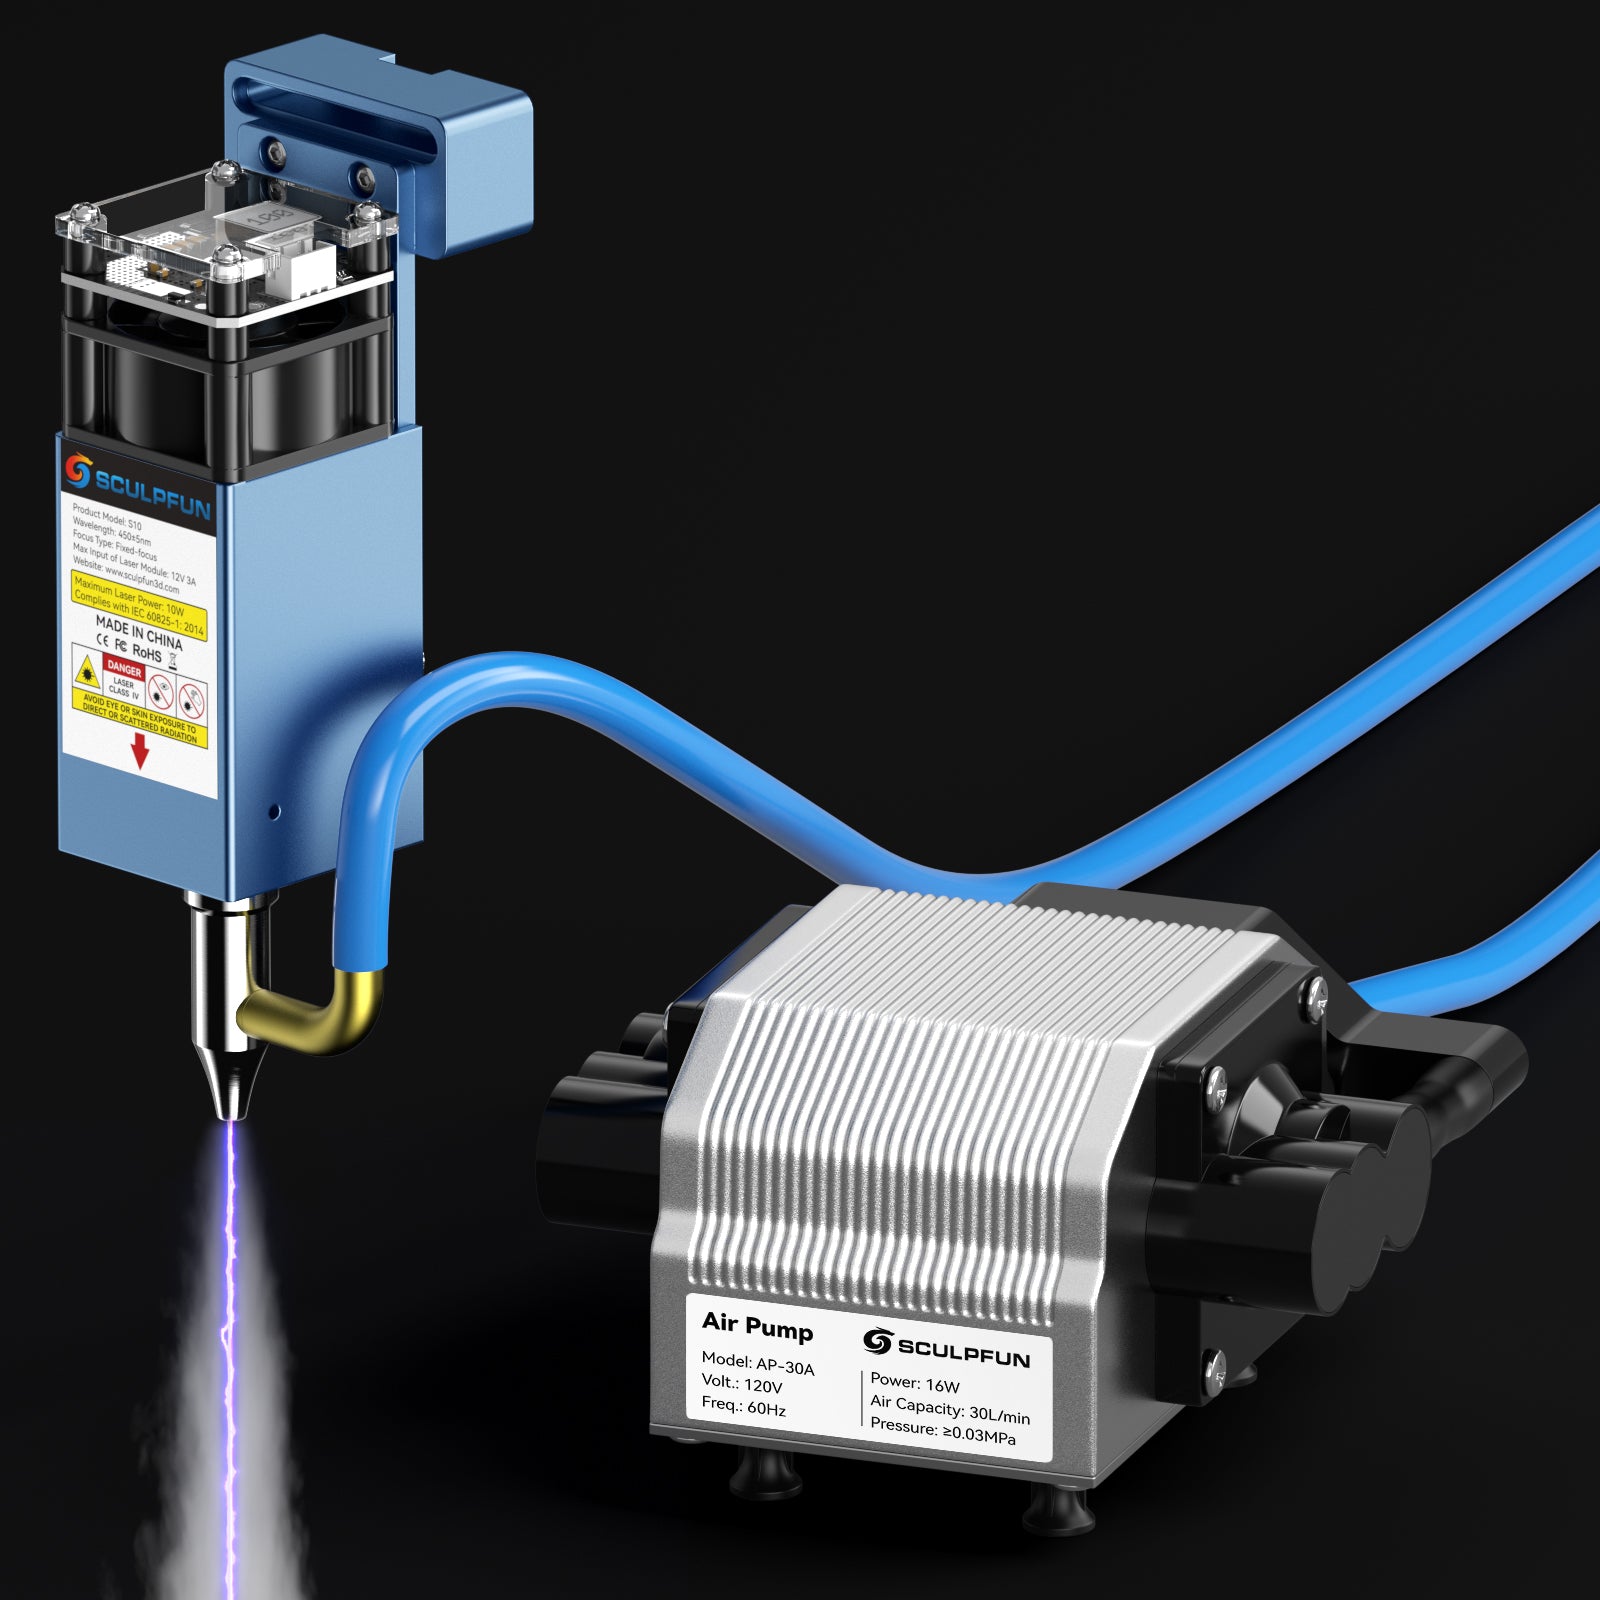 SCULPFUN 30L/Min Air Pump Air Compressor for Laser Engraving Machine